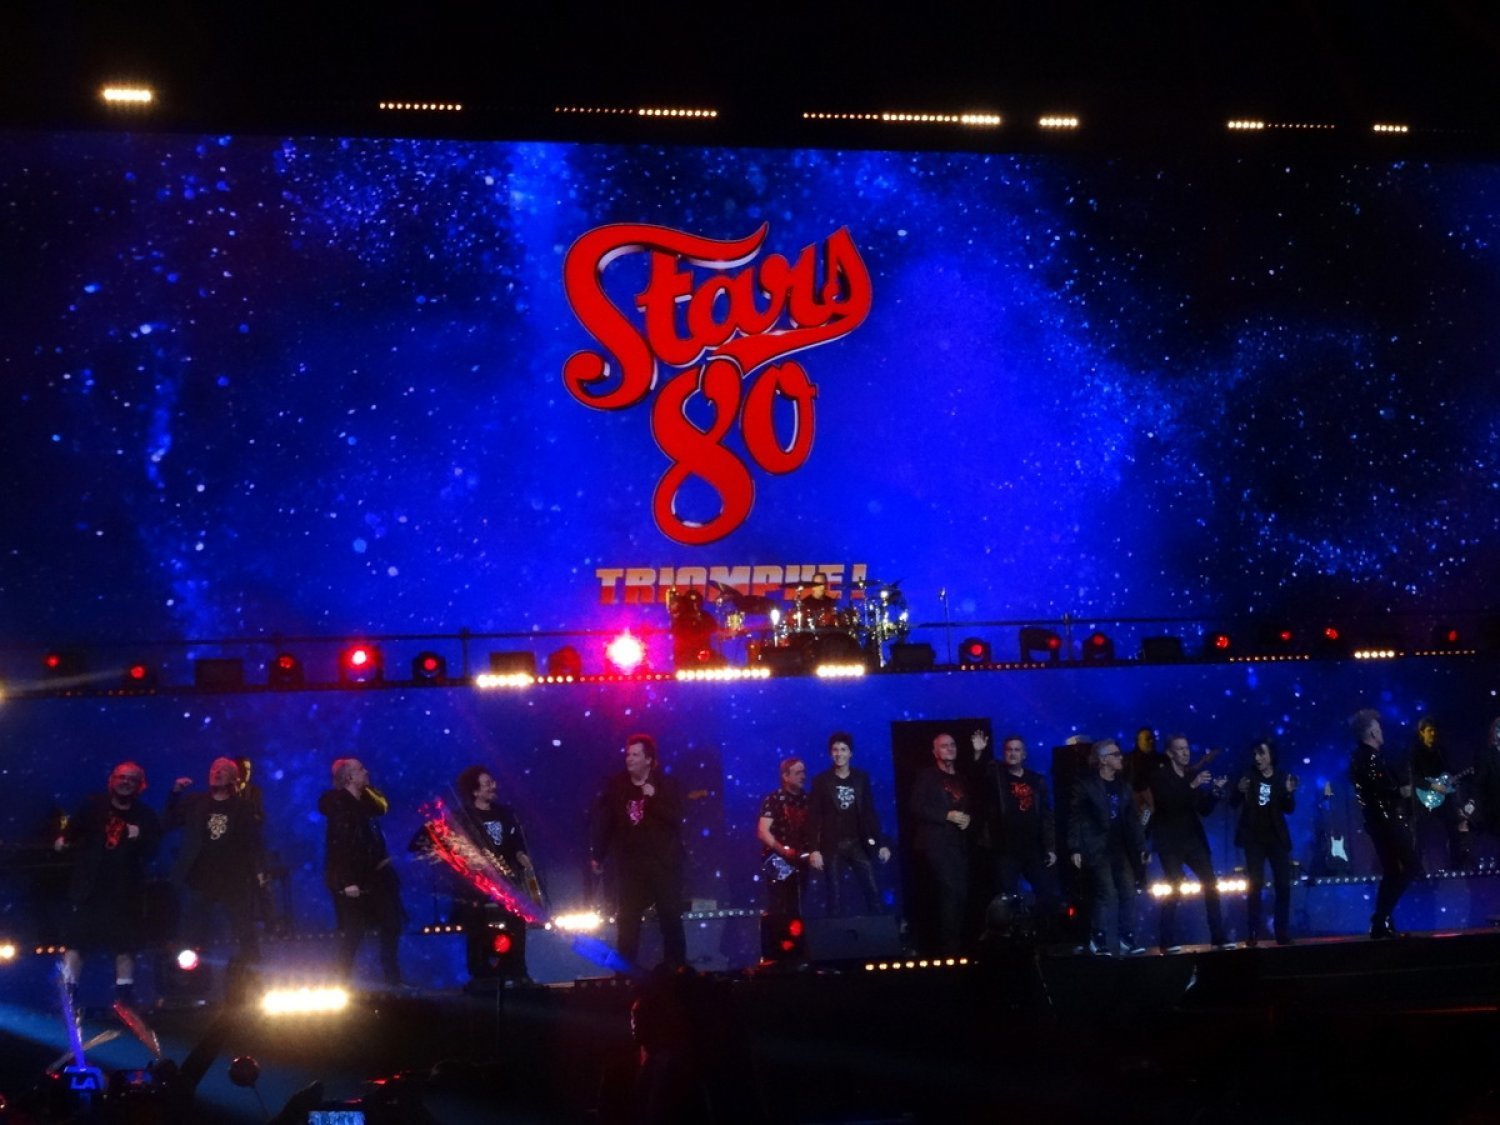 Stars 80 à l'U Arena (Paris - 2017)